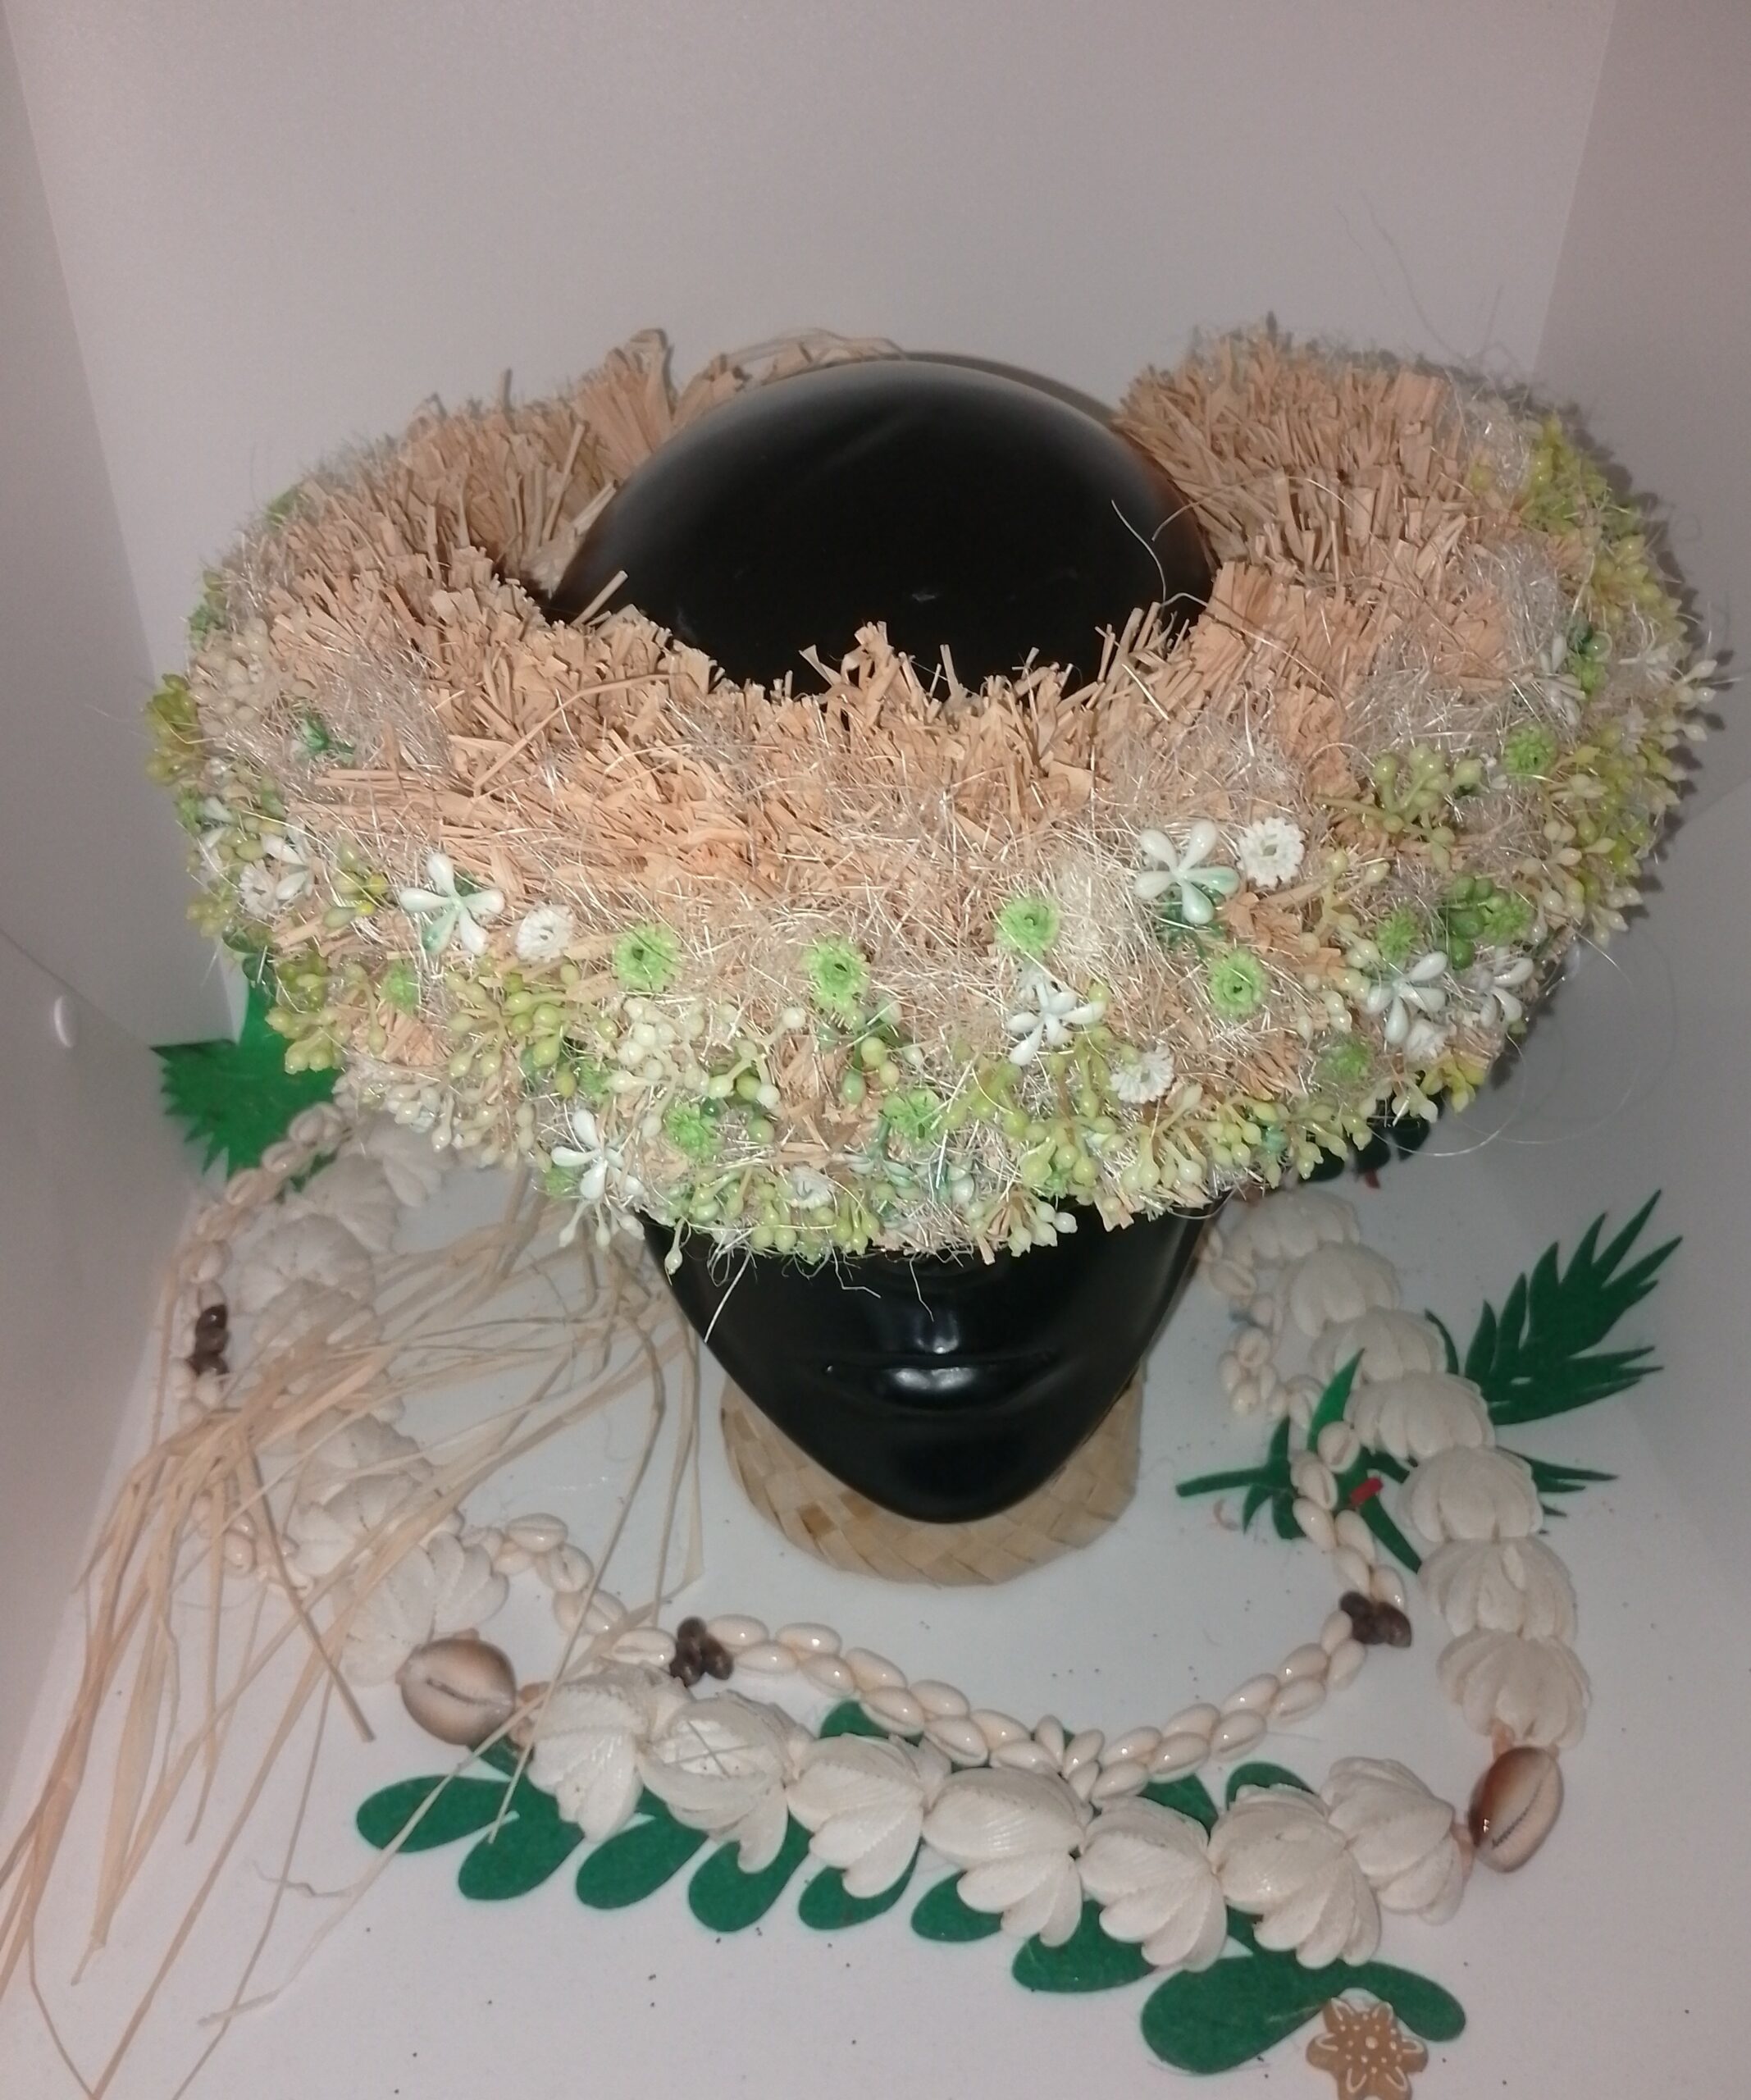 couronne végétale de tête de raphia et sisal avec ornements végétaux et floraux by Vaite.e.Tiare créations